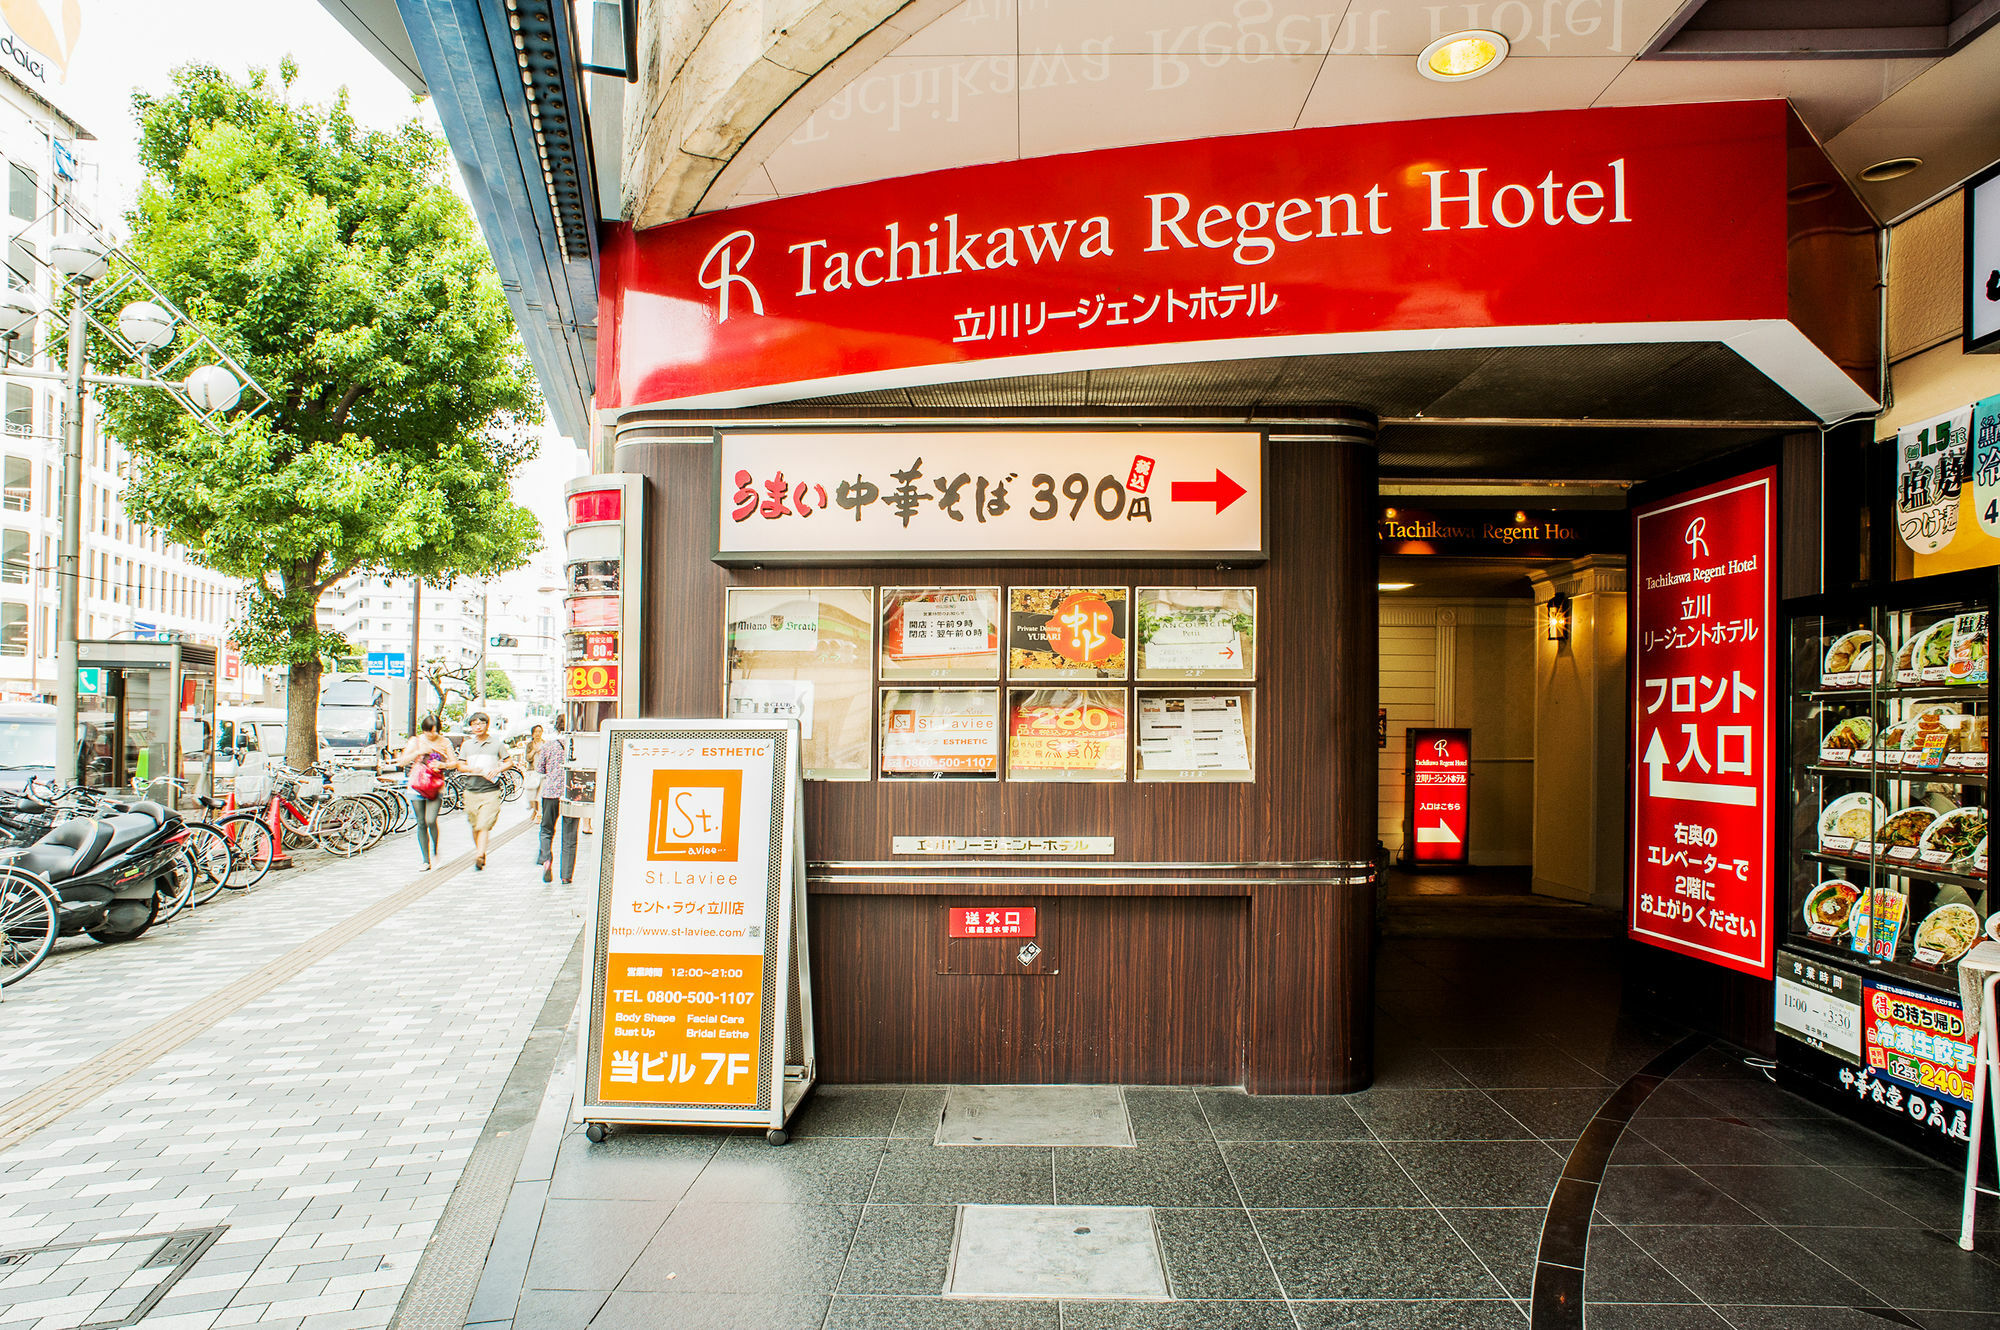 فندق تاتشيكاوافي  فندق تاشيكاوا ريجنت المظهر الخارجي الصورة